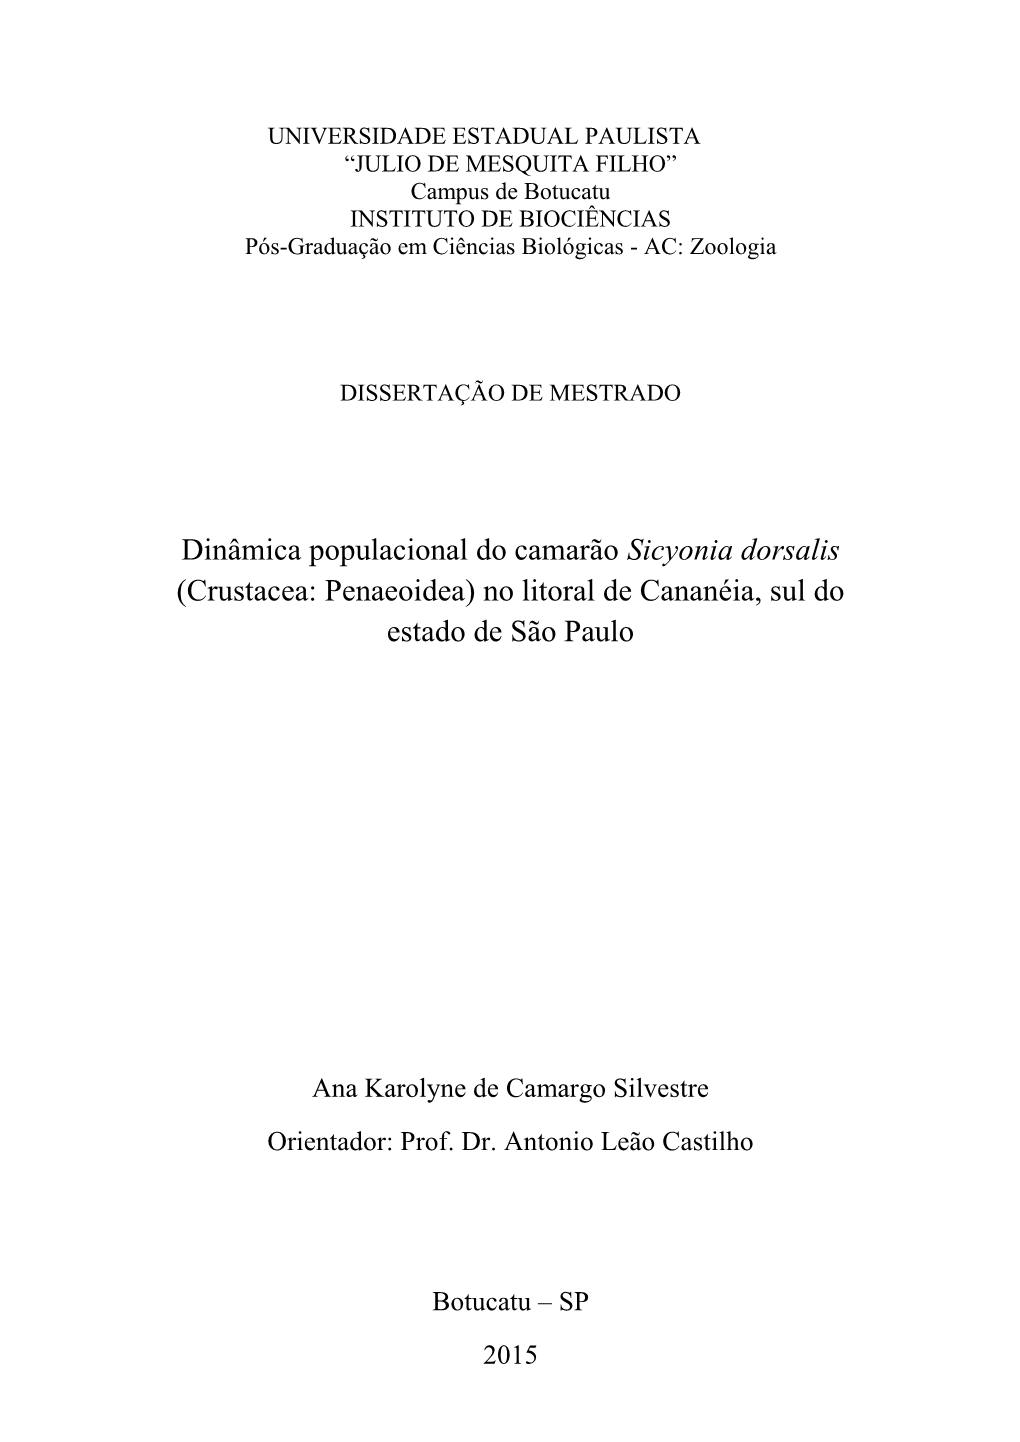 Dinâmica Populacional Do Camarão Sicyonia Dorsalis (Crustacea: Penaeoidea) No Litoral De Cananéia, Sul Do Estado De São Paulo